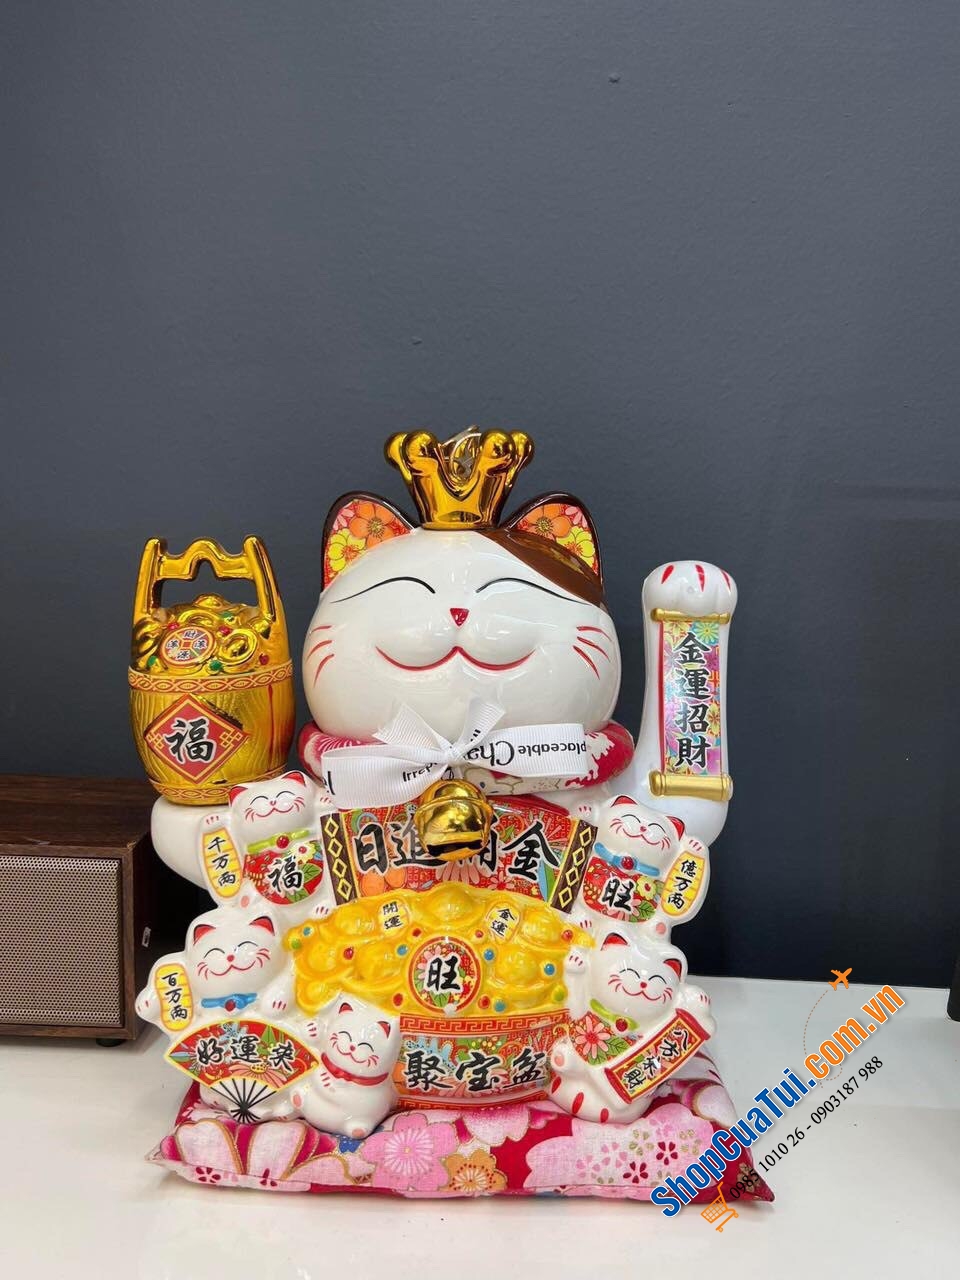 Mèo vẫy tay thần tài Nhật bản Maneki-neko mẫu 2024 - Kinh Doanh Đắc Lợi, Hạnh phúc sung túc 32 cm - mèo thần tài 32 cm quá đẹp cả về thần thái và thiết kế